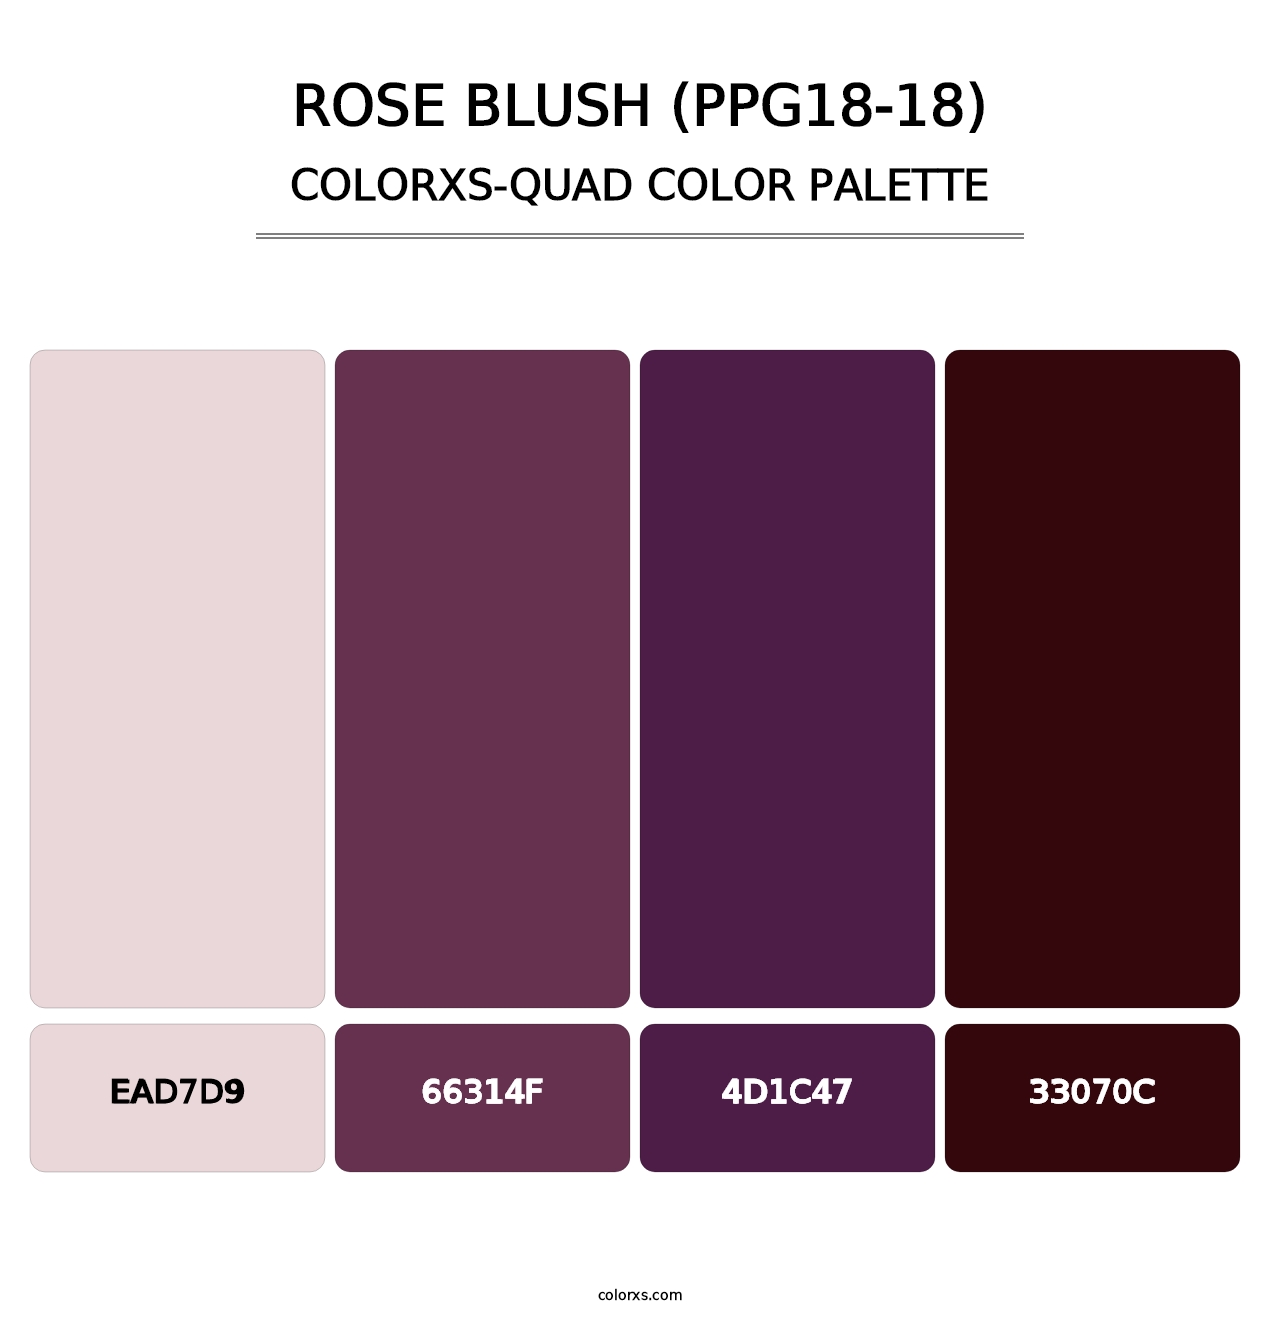 Rose Blush (PPG18-18) - Colorxs Quad Palette